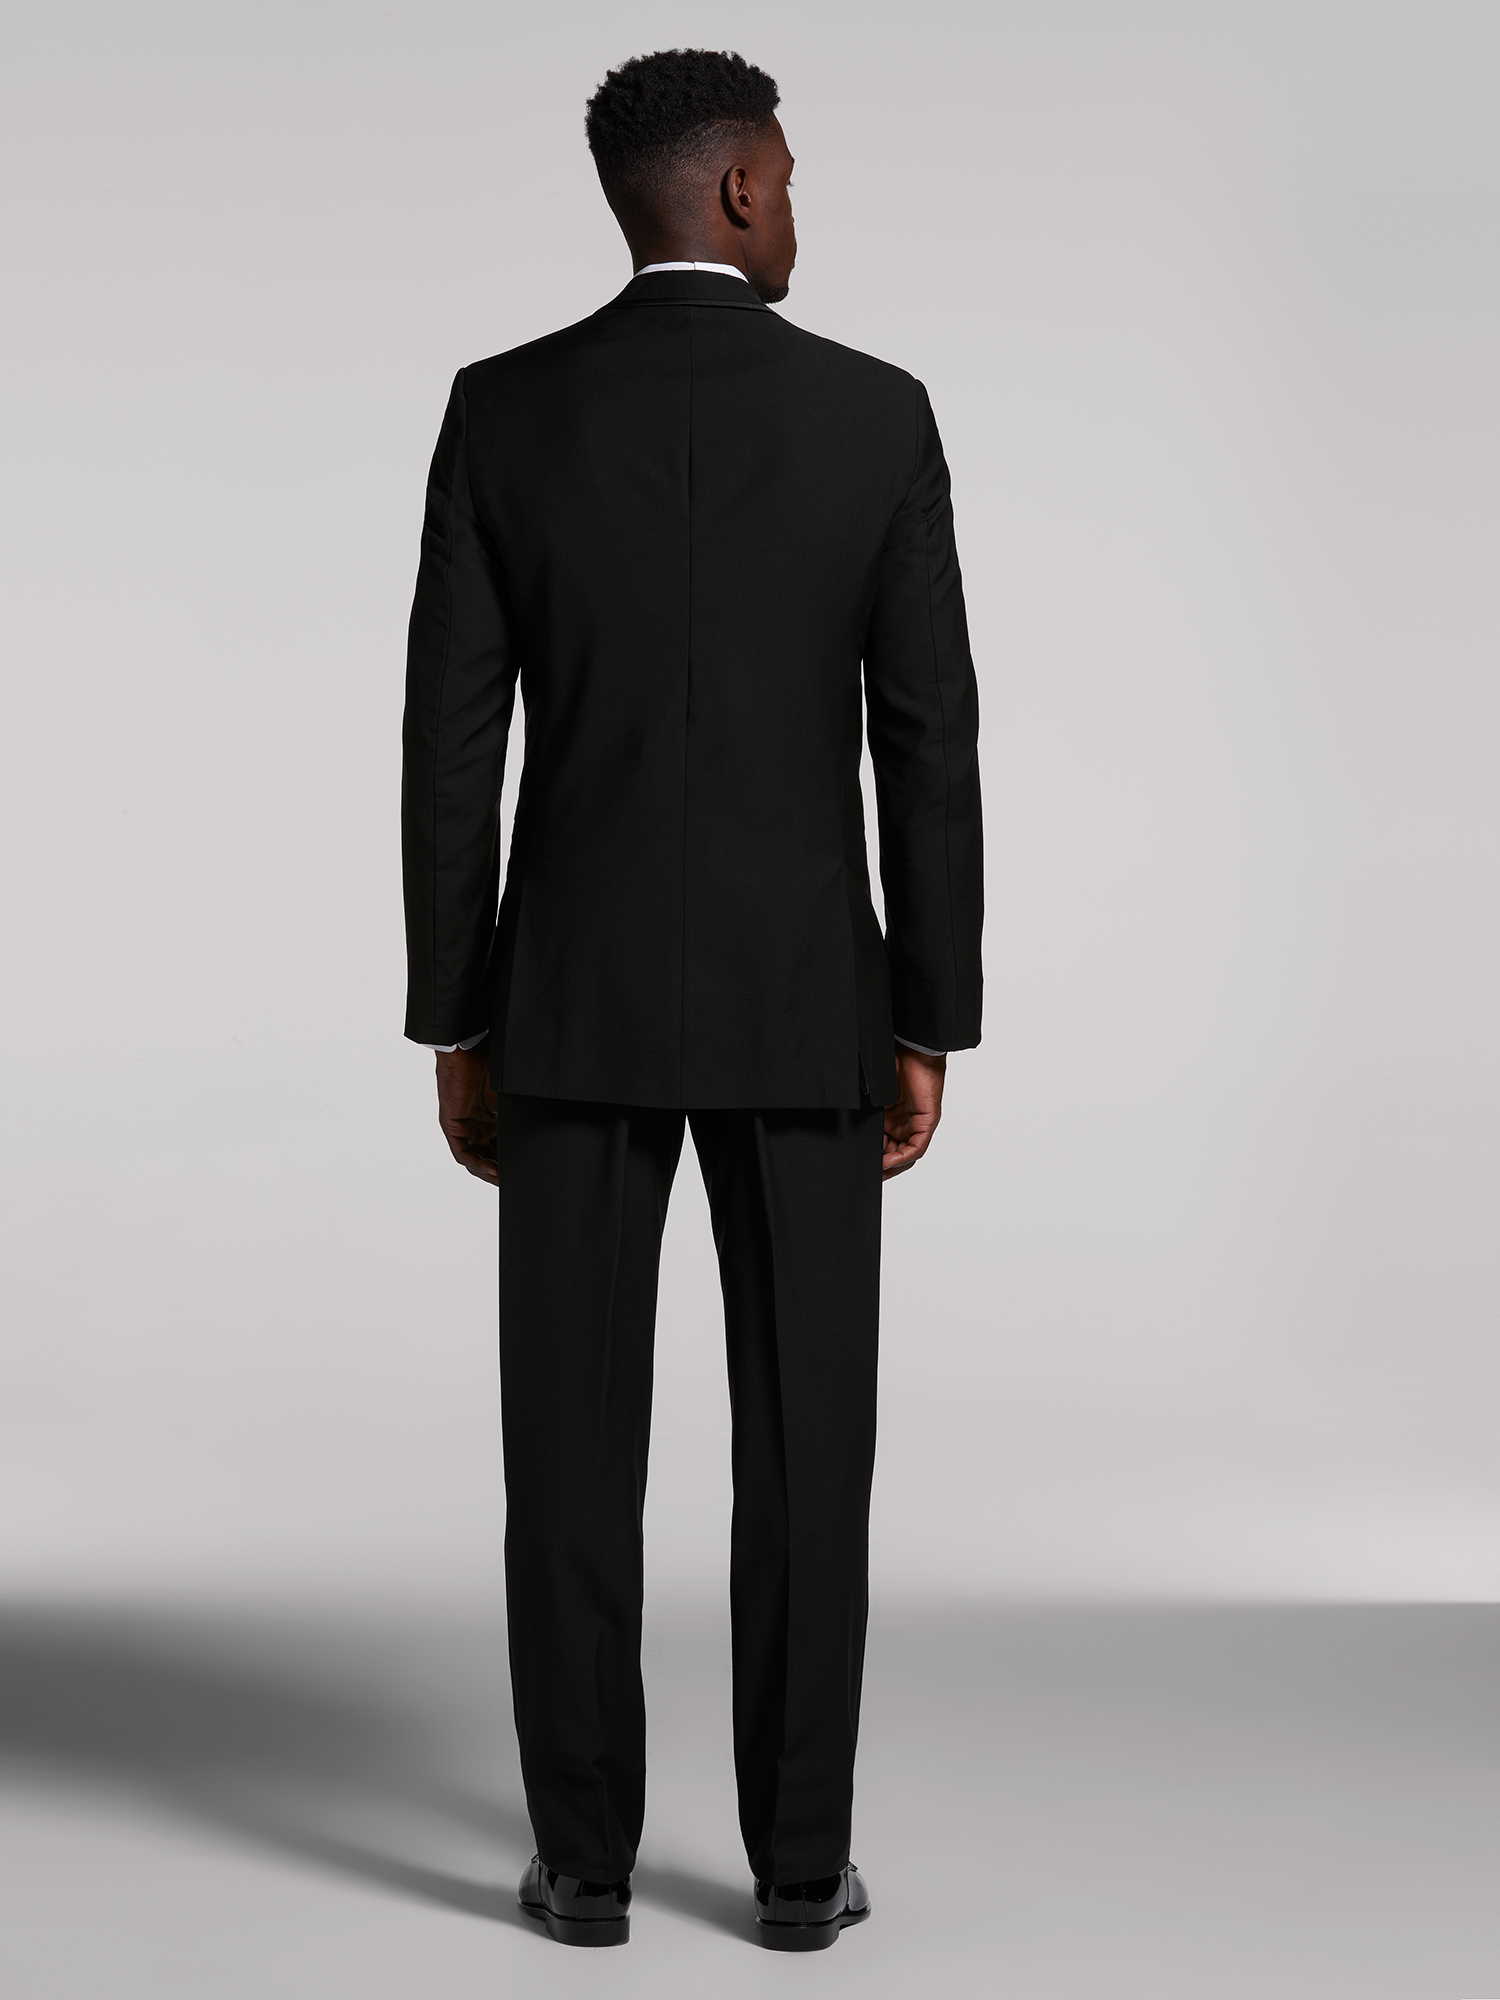 Black Suit  The Black Tux